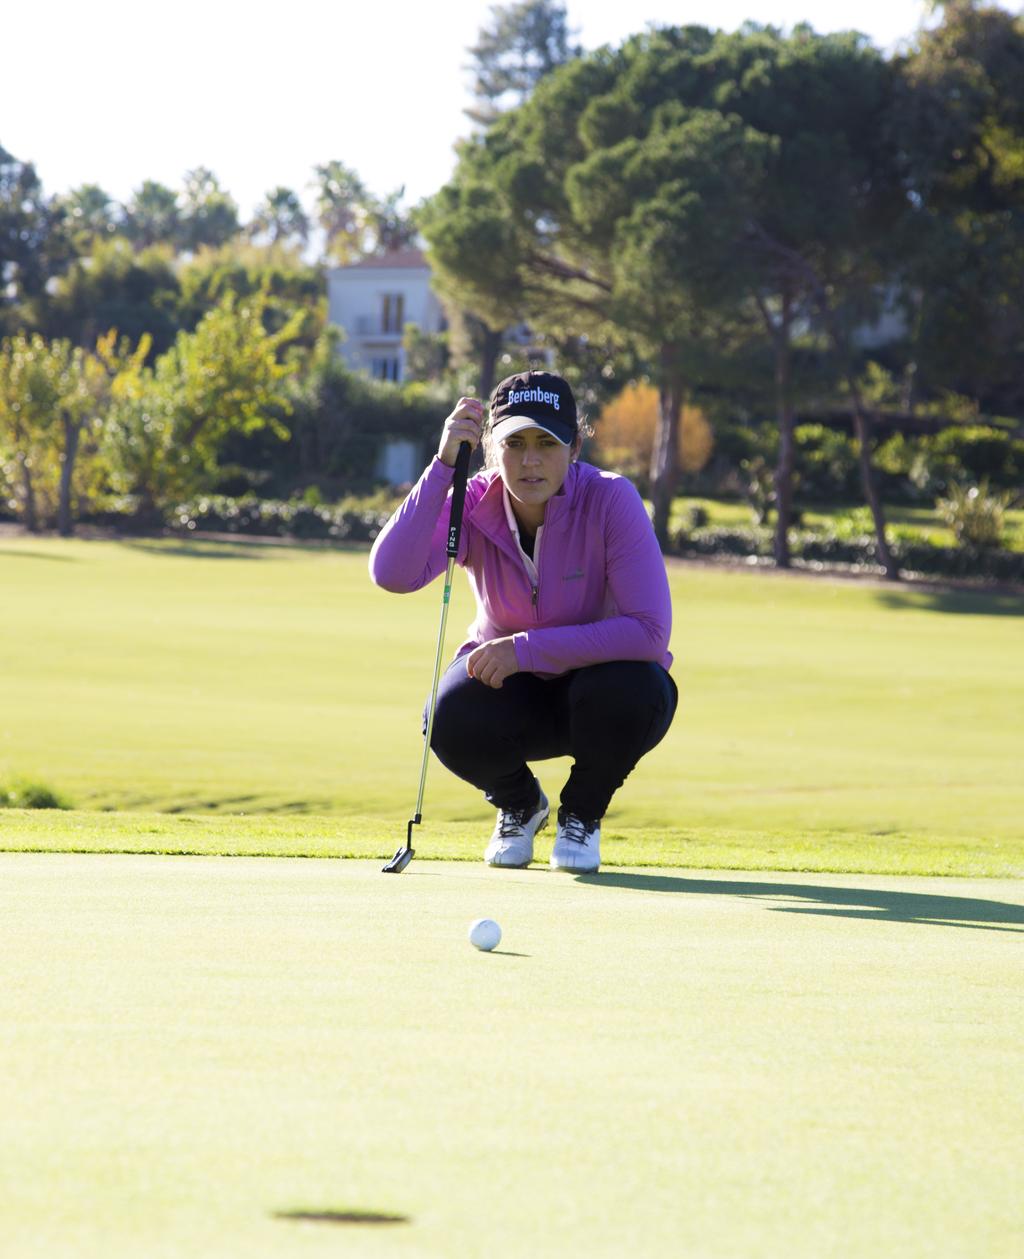 María Parra María Parra, en su carrera como Amateur ha logrado incontables éxitos que hacen de esta jugadora una verdadera promesa en los circuitos de golf más importantes del mundo.